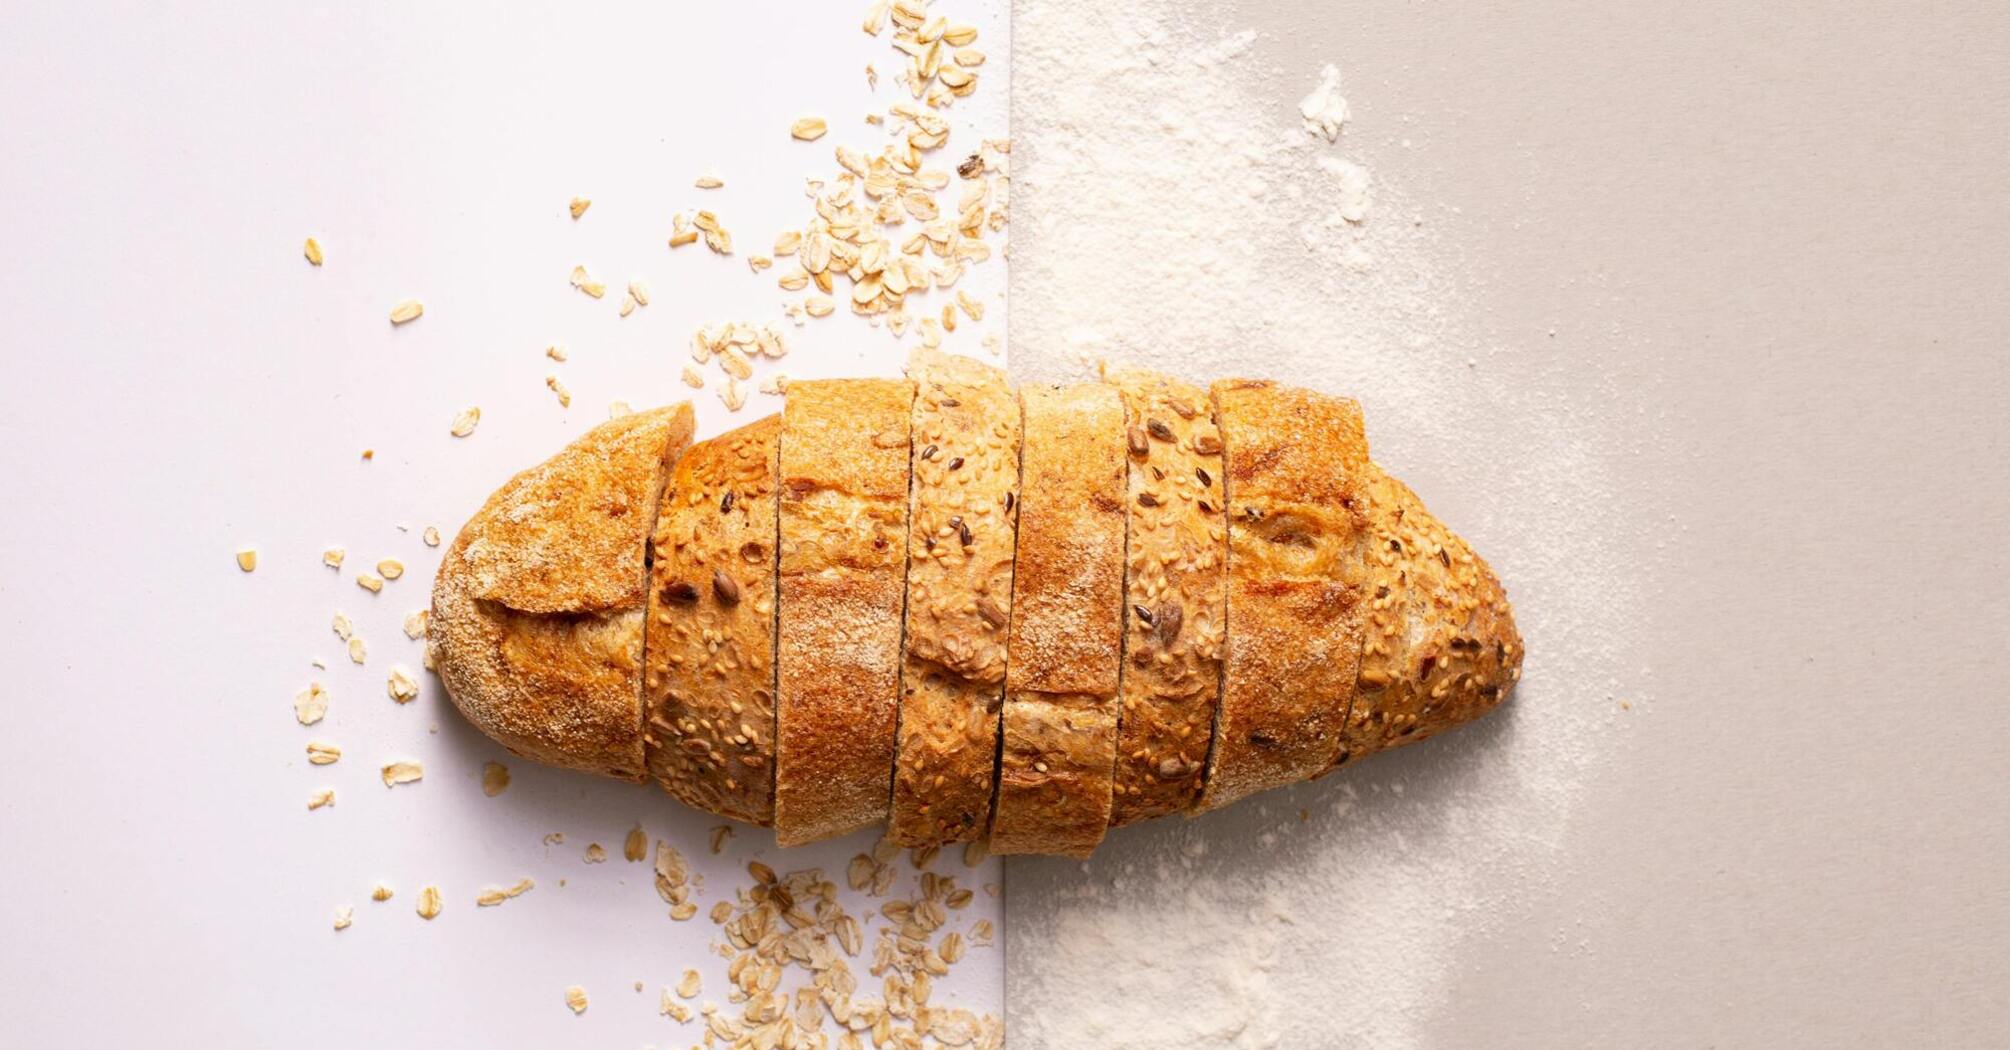 Негативное влияние на судьбу: Почему не стоит ломать хлеб руками